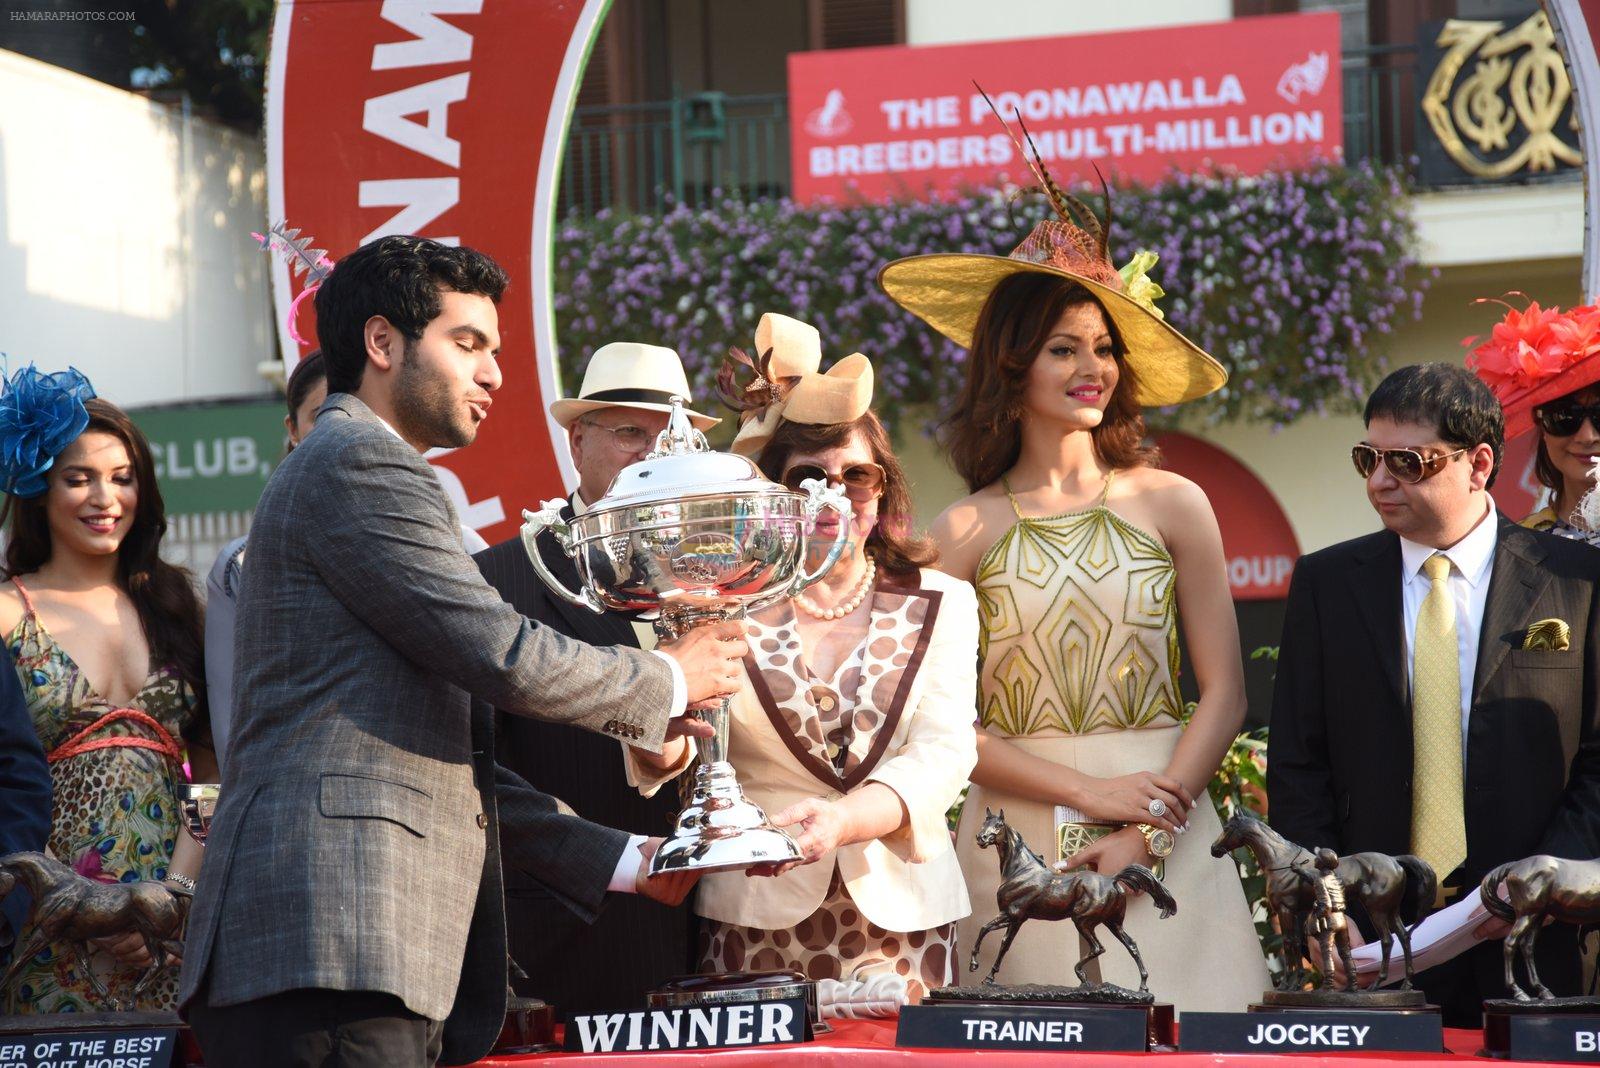 Urvashi Rautela at Poonawala race in mahalaxmi on 22nd Feb 2015